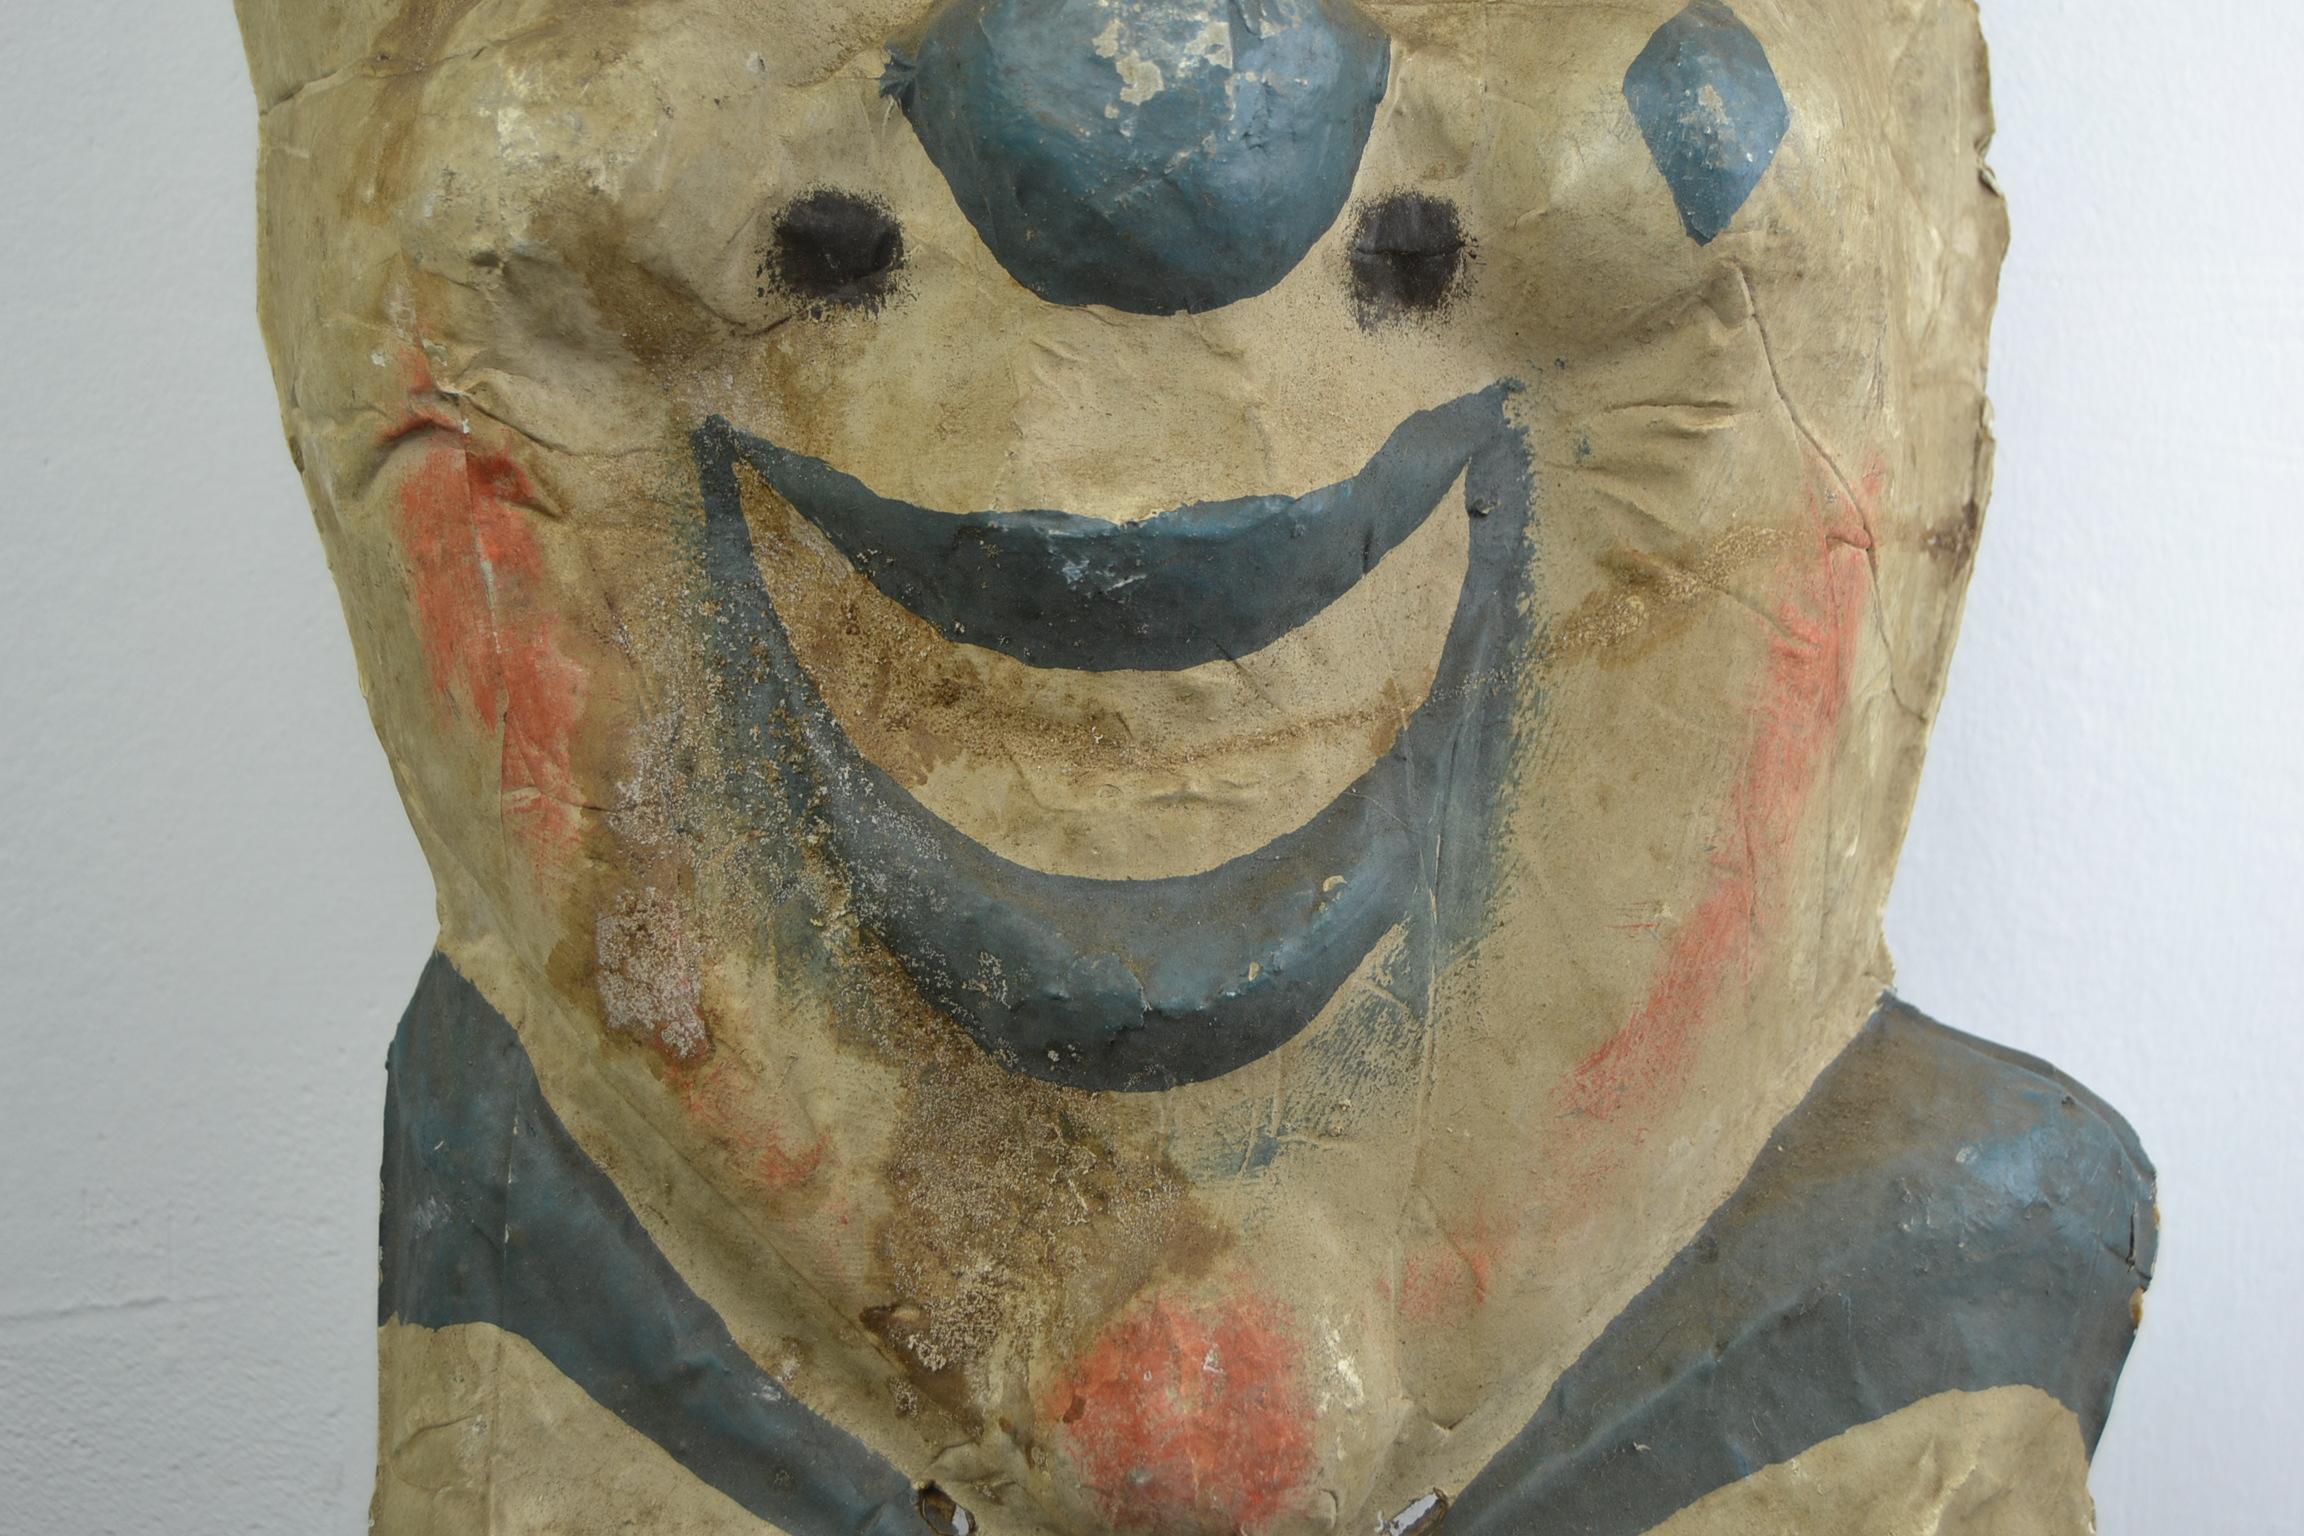 European Smiling Circus Clown Head, Papier Mâché, 1930s